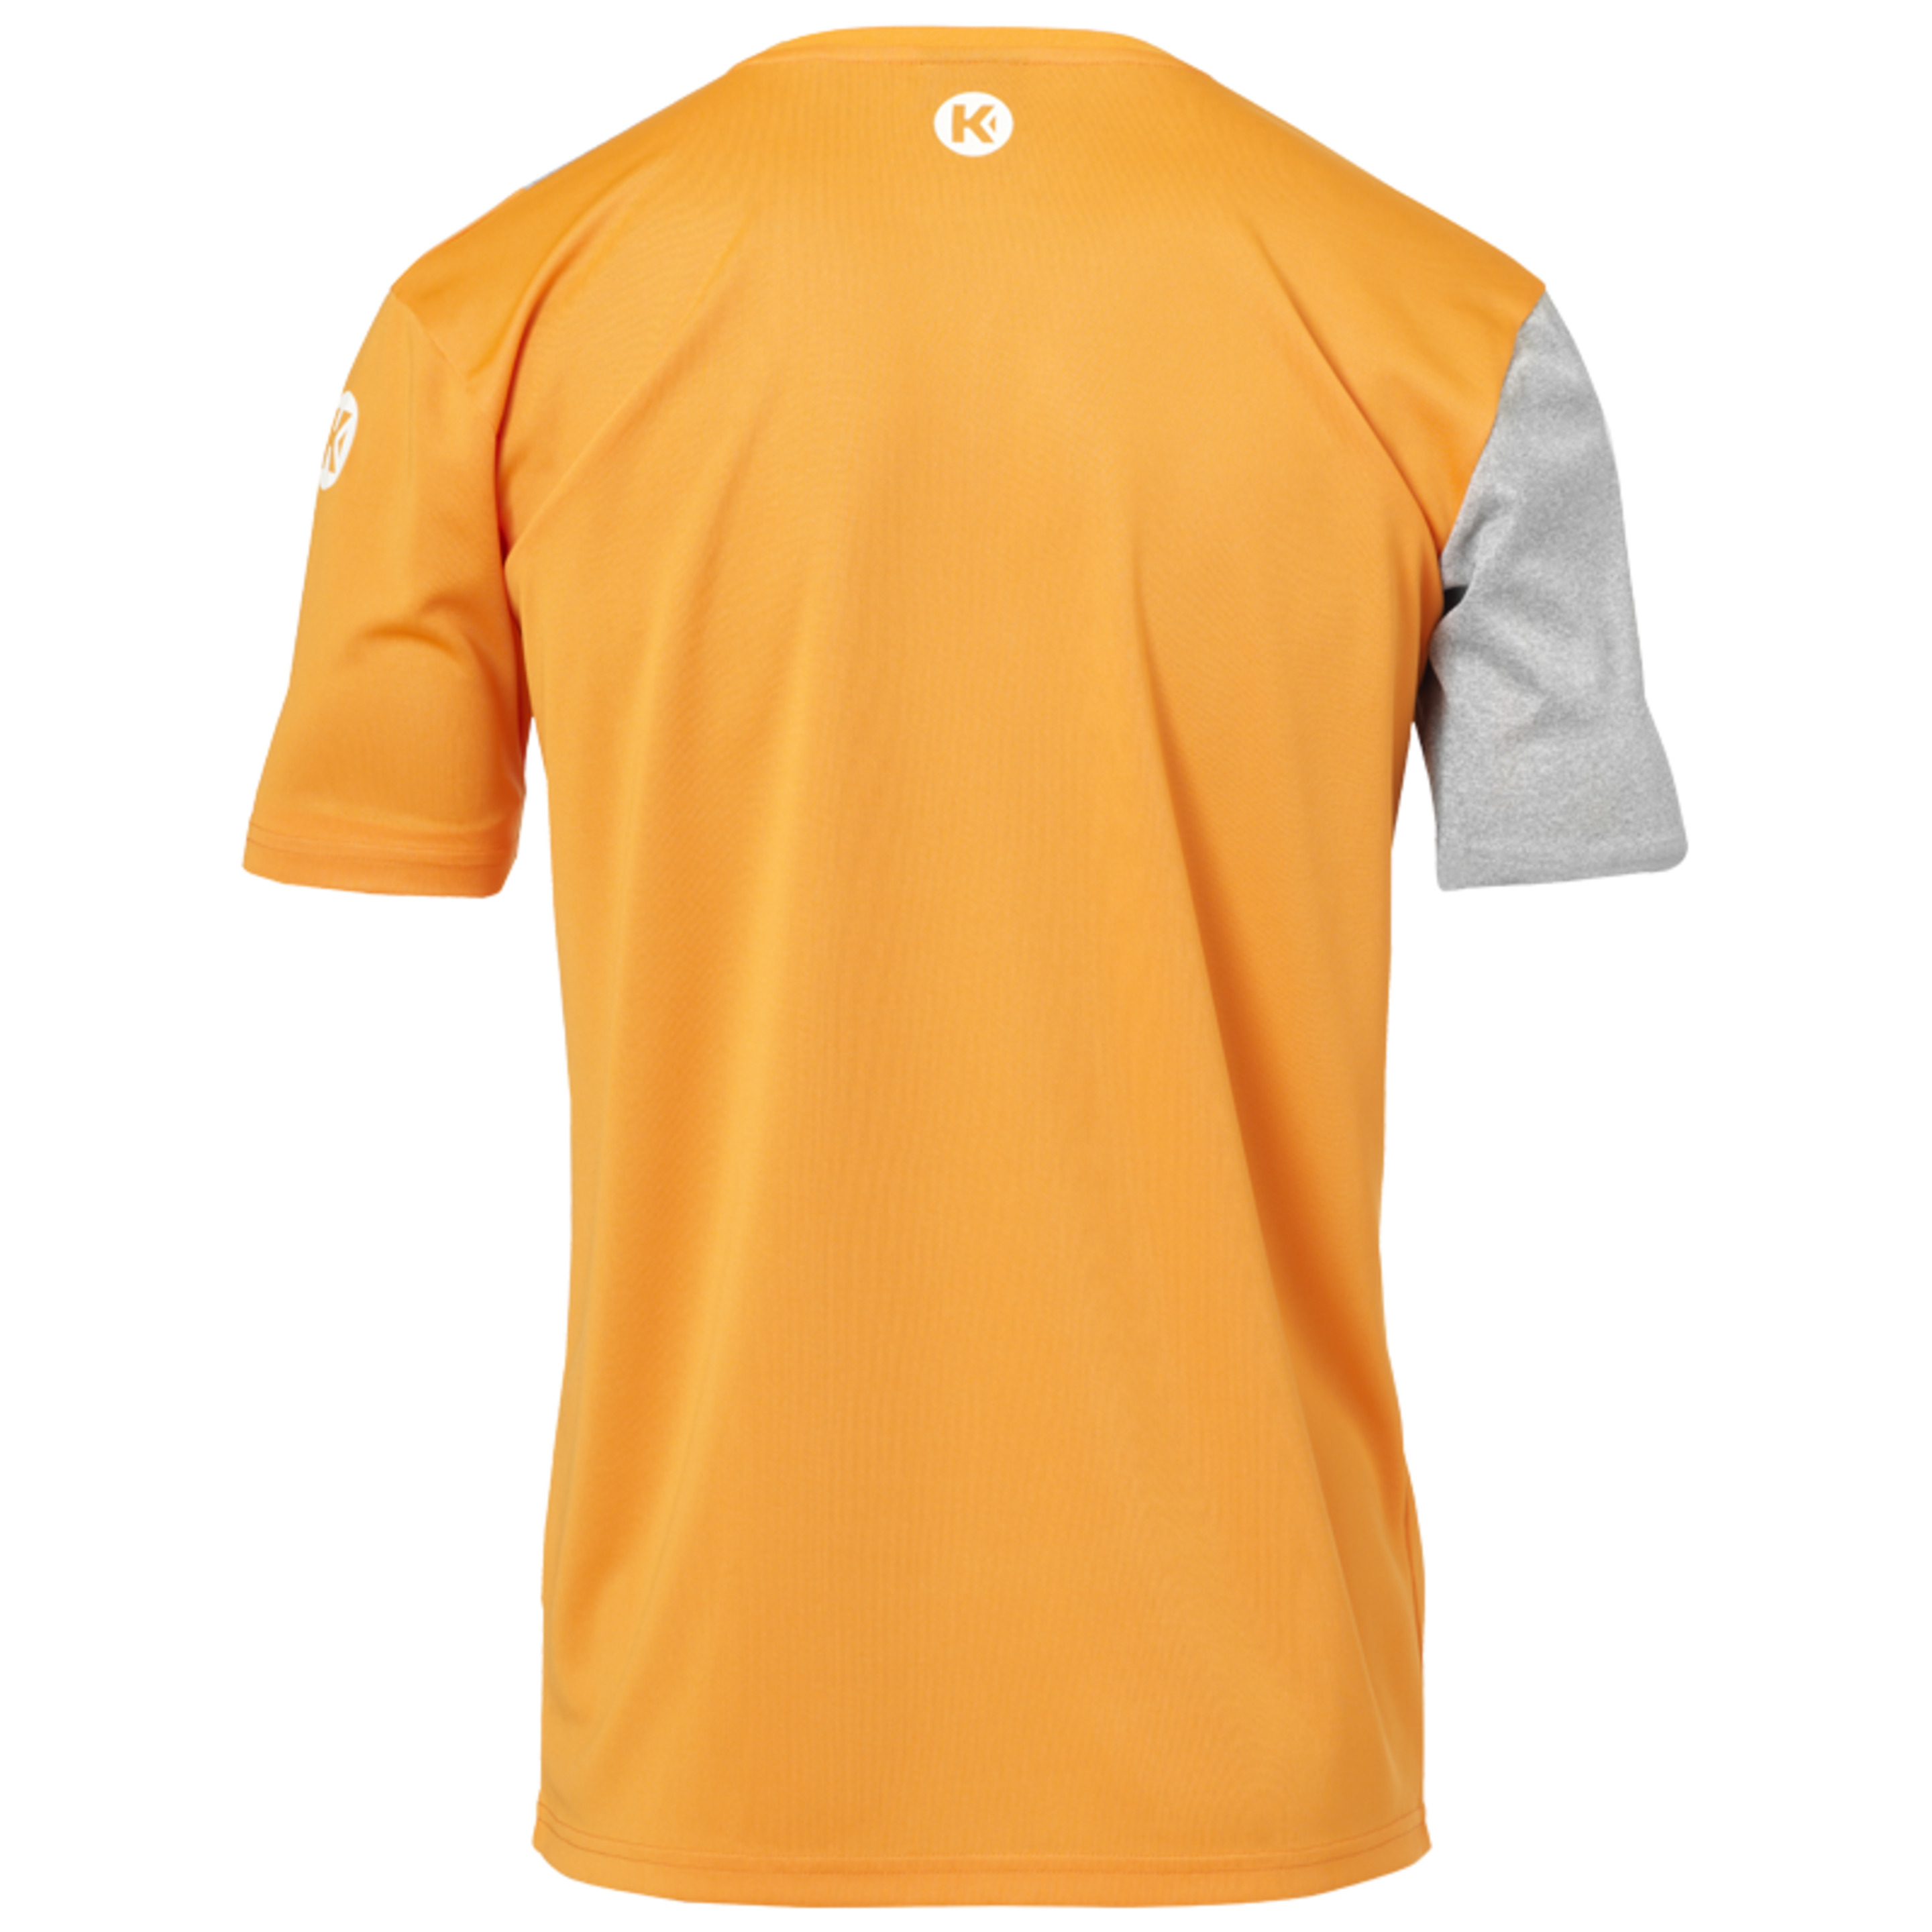 Core 2.0 Shirt Naranja Fresh/gris Oscuro Kempa - naranja - Core 2.0 Shirt Naranja Fresh/gris Oscuro Kempa  MKP